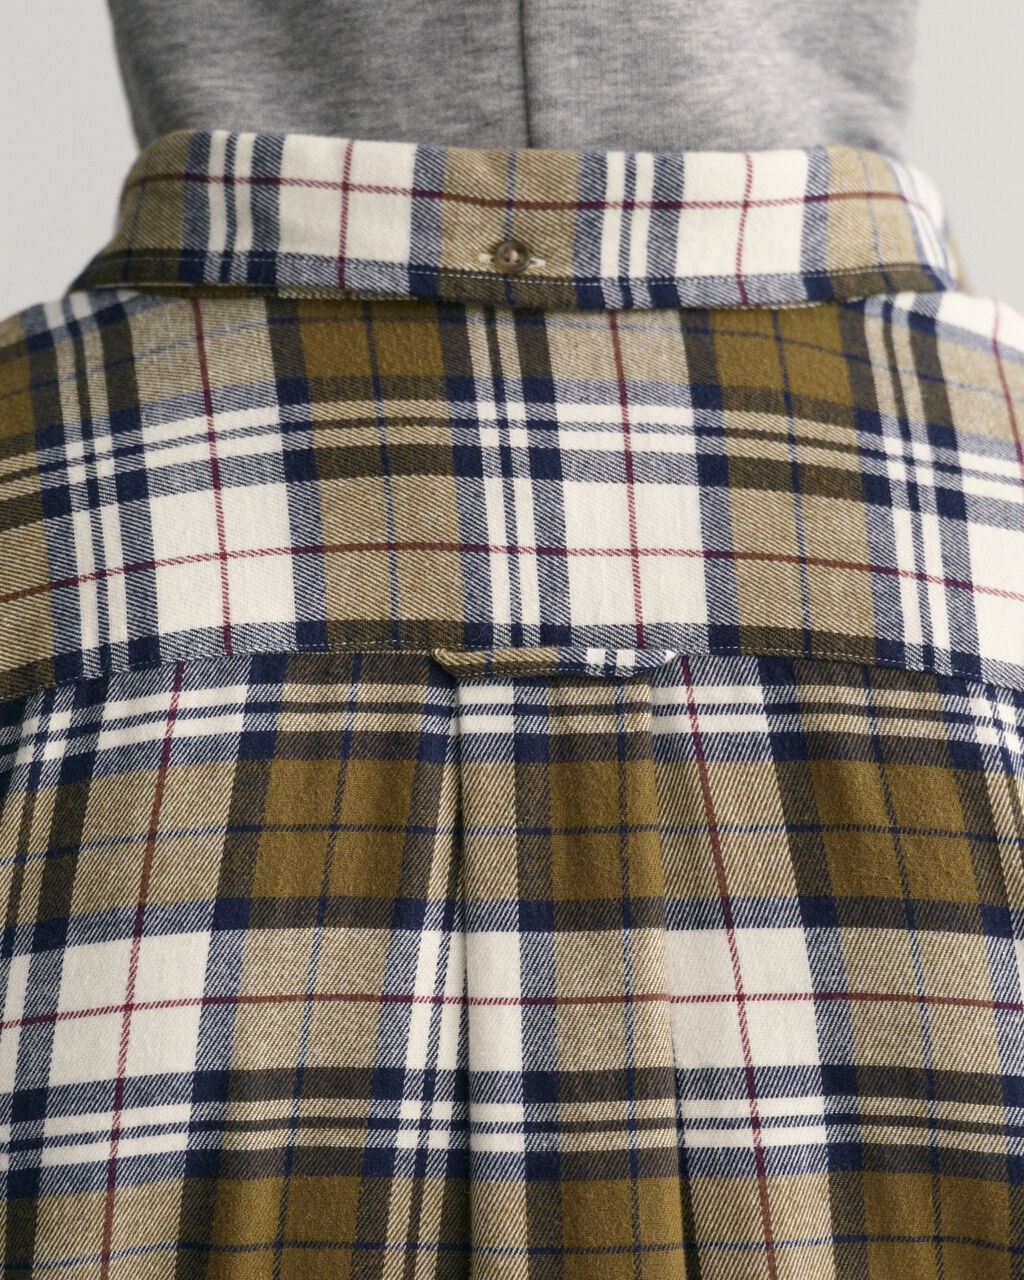 Gant Flannel Check Shirt - Khaki